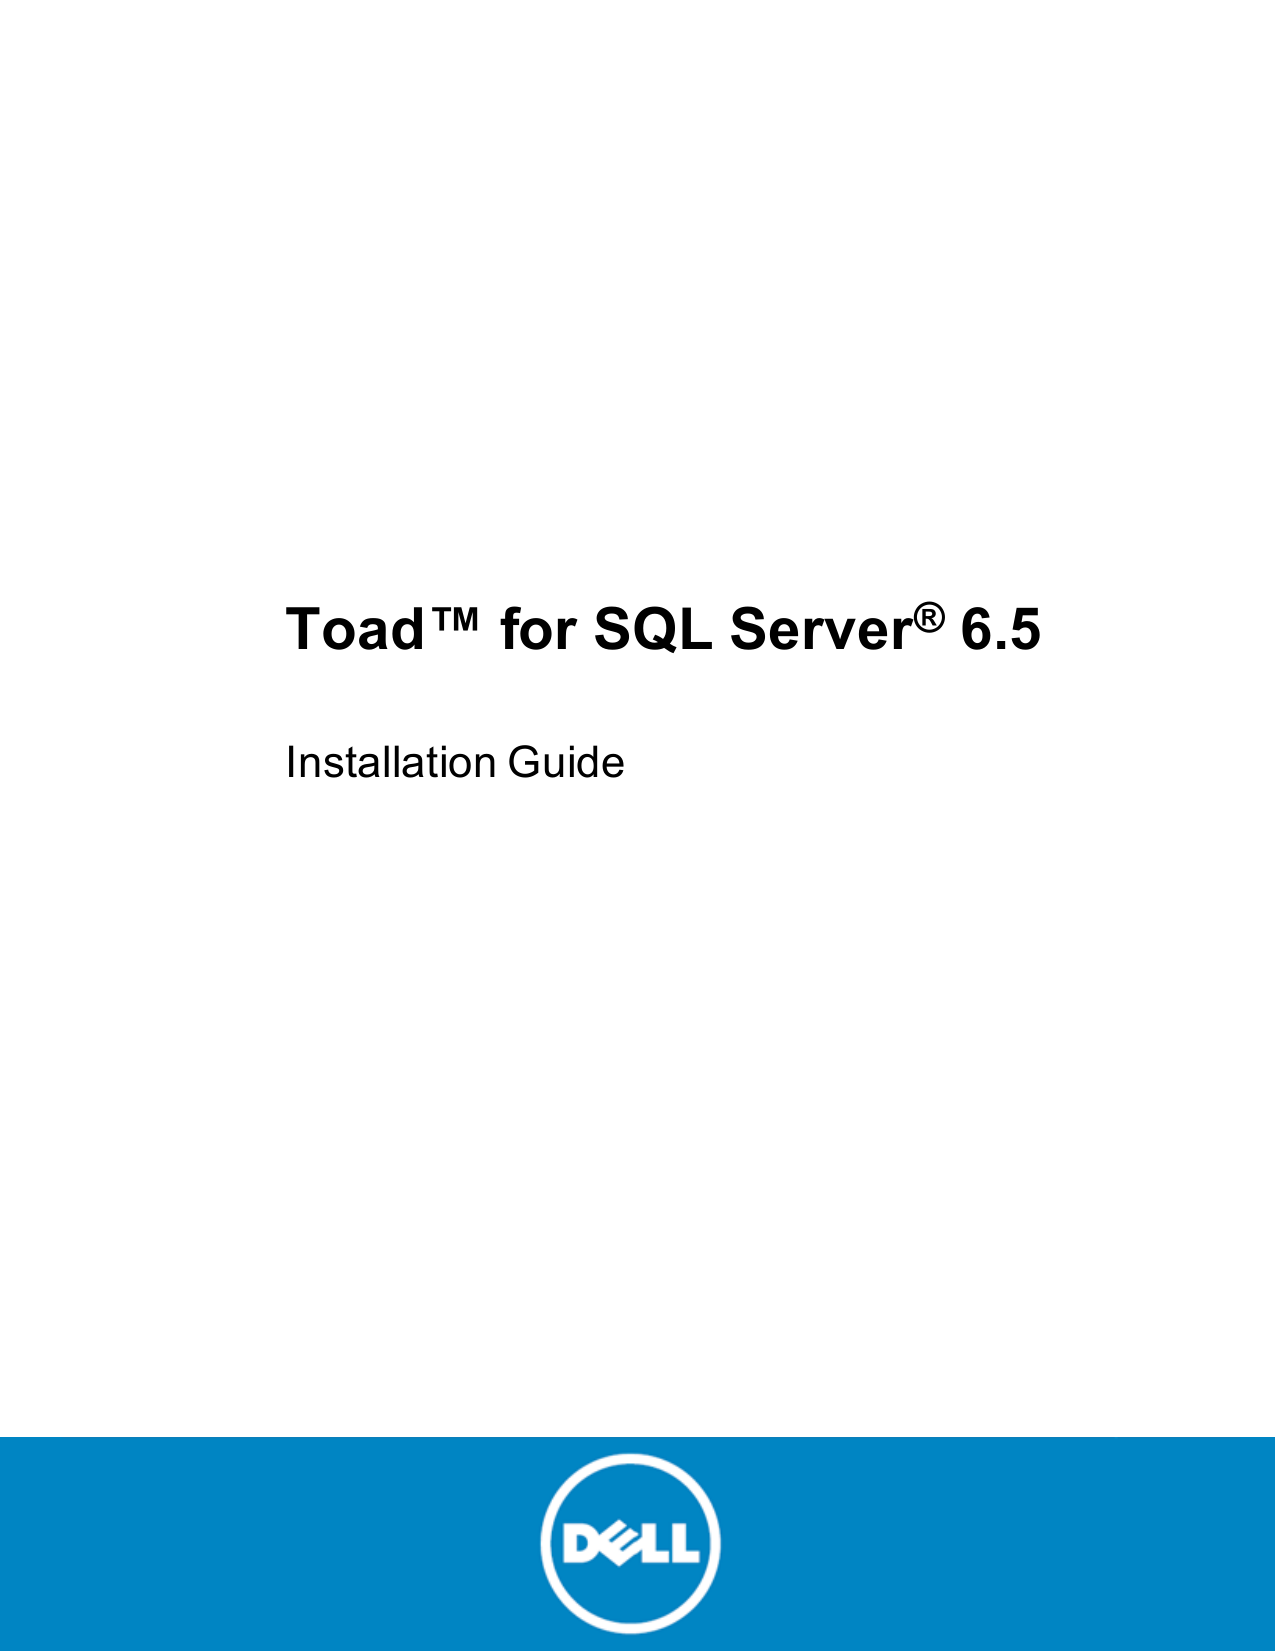 toad sql server